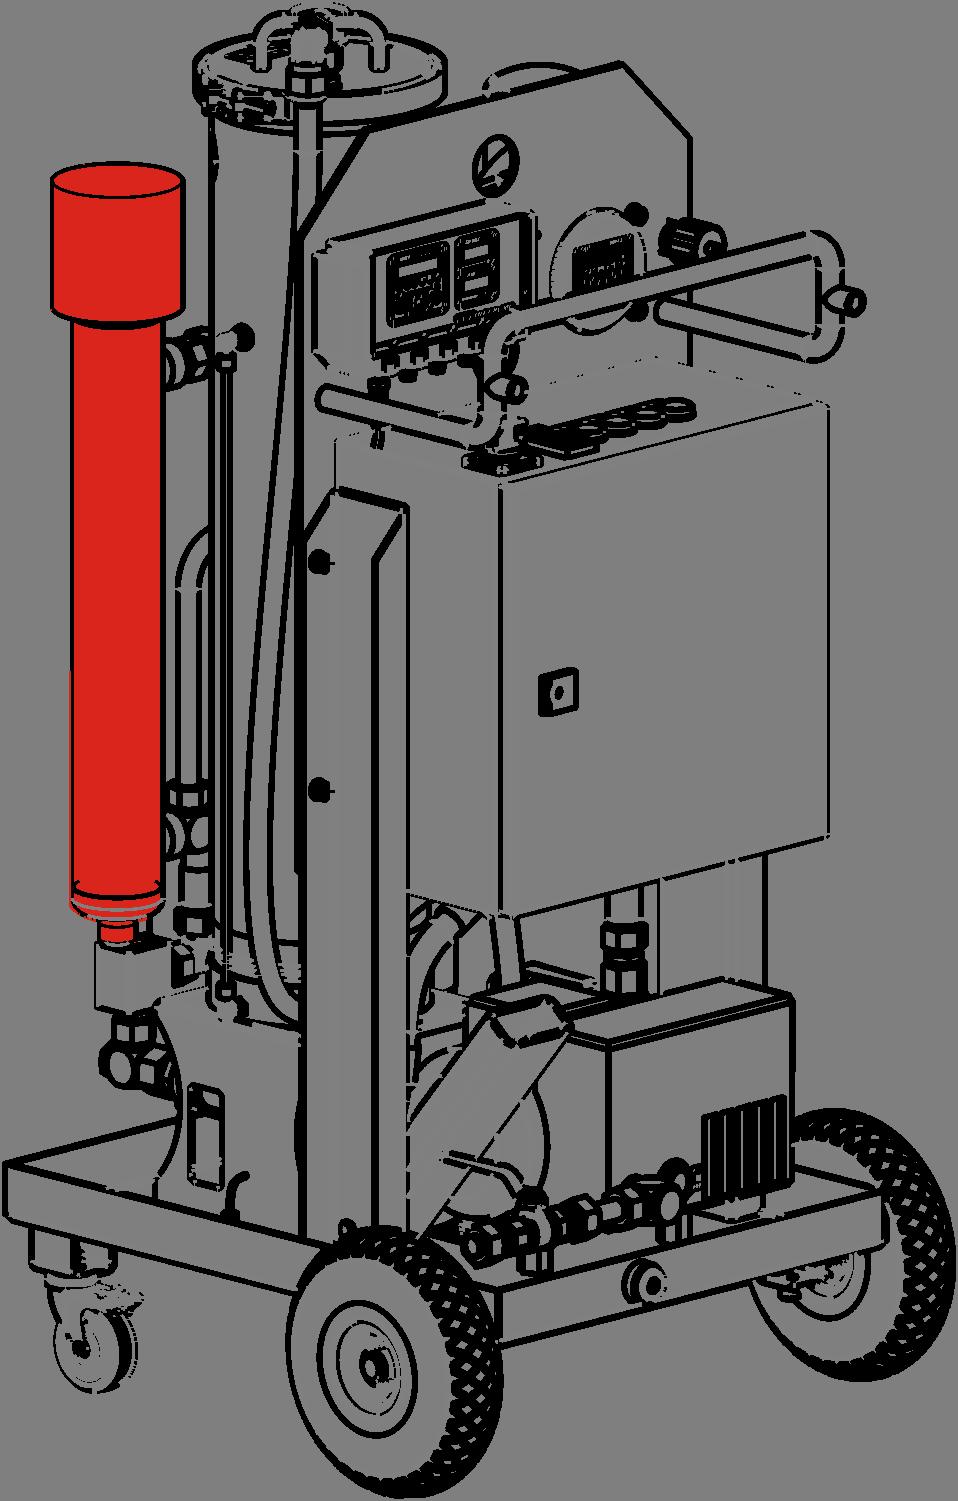 Executar a manutenção Esvaziar o aquecedor Esvazie o aquecedor. através do parafuso de dreno.